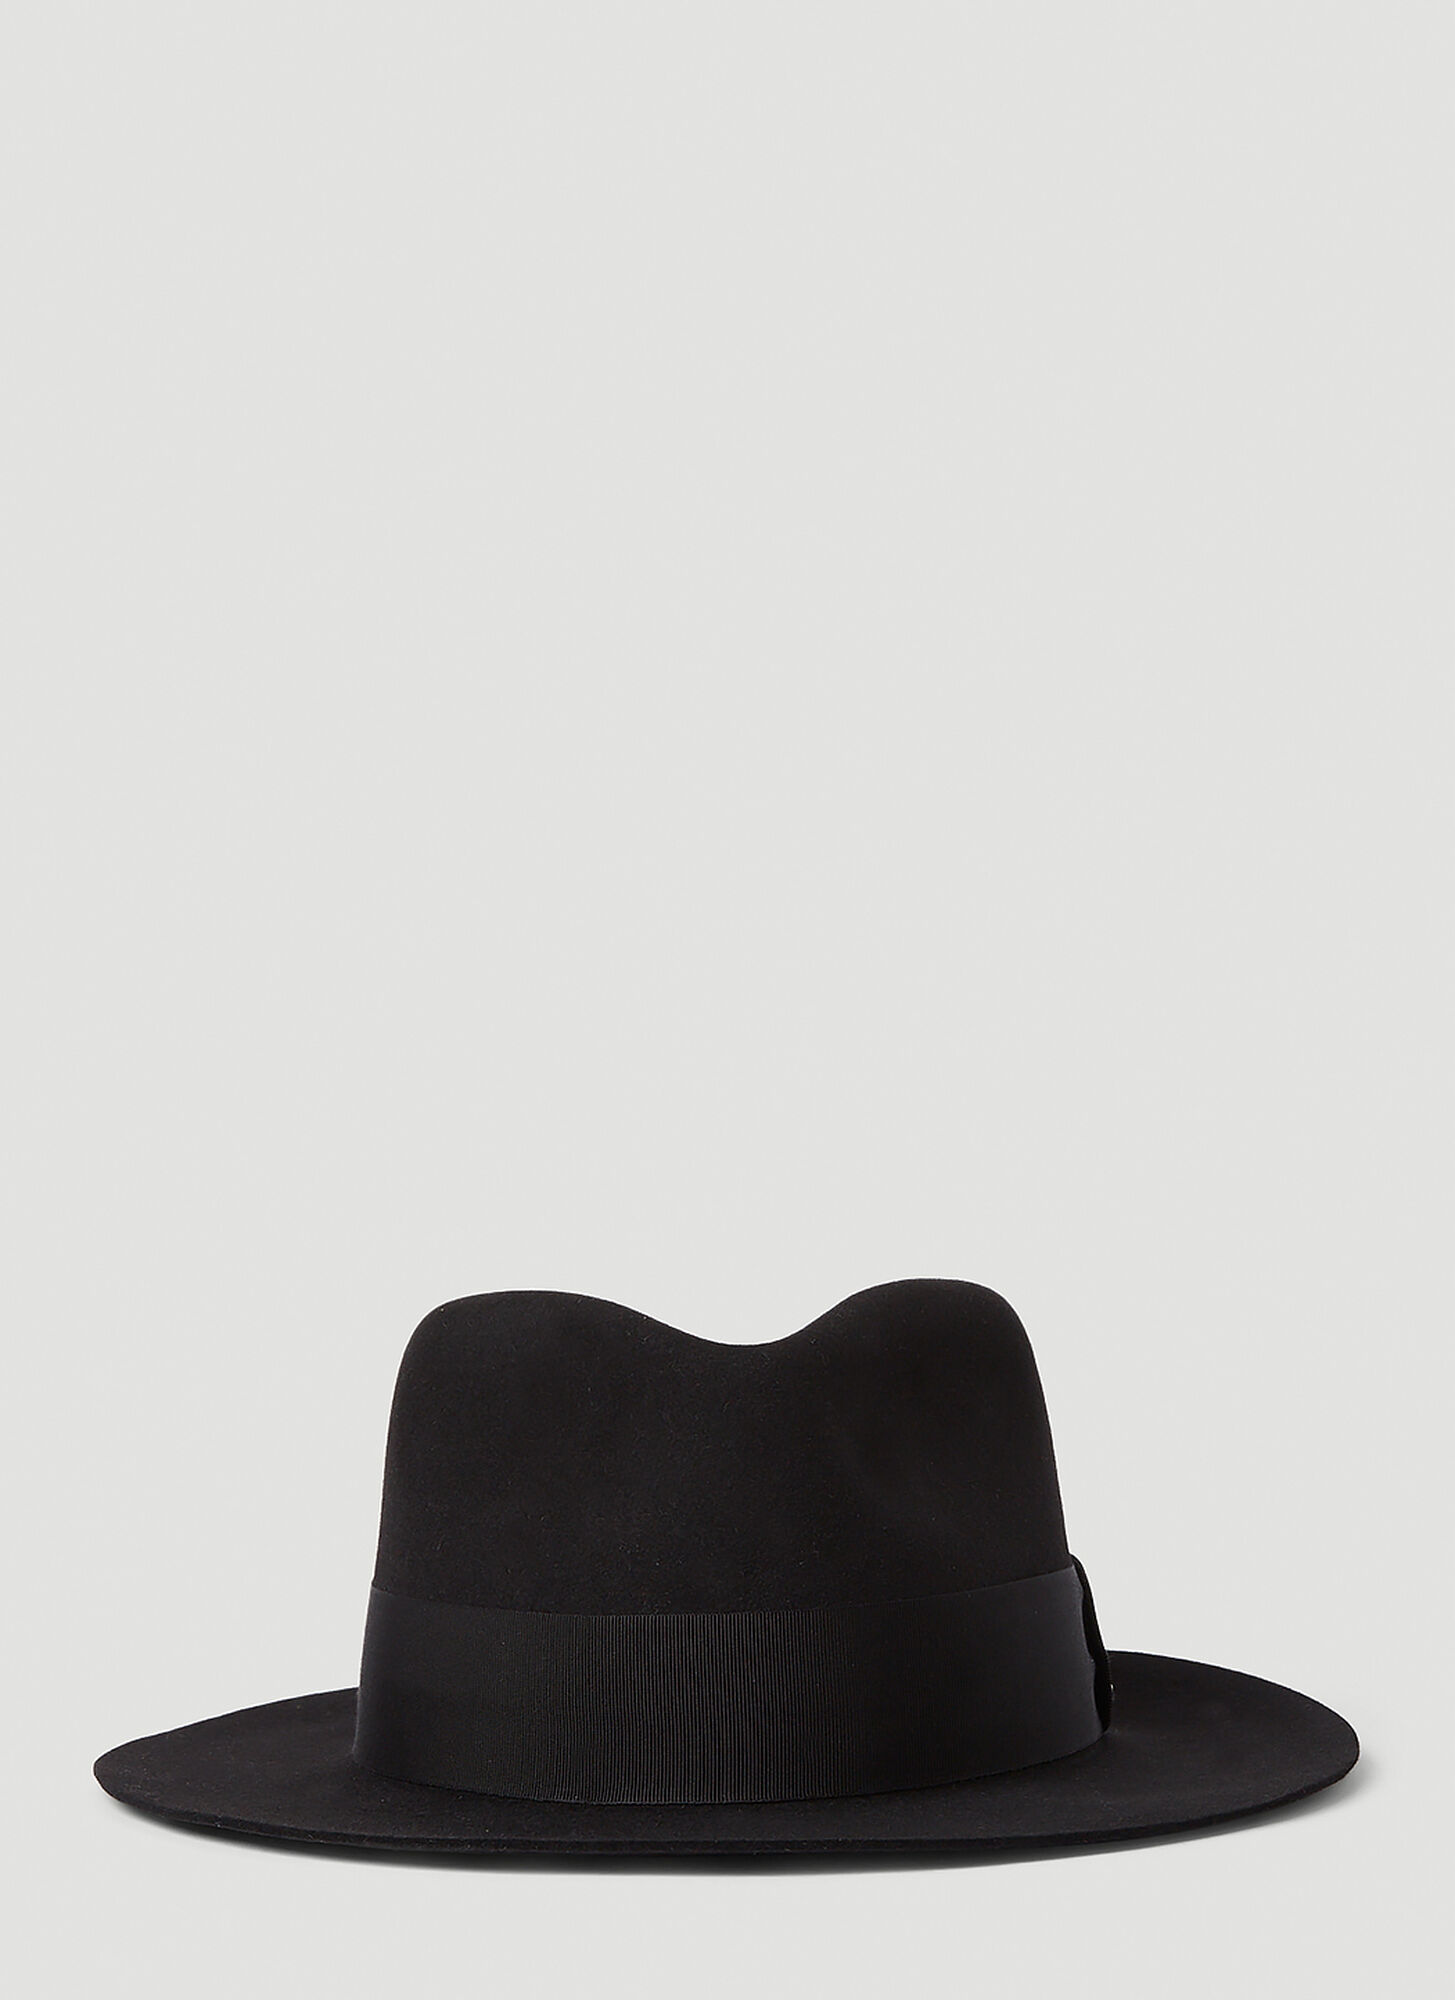 Saint Laurent Fedora Hat Female Black